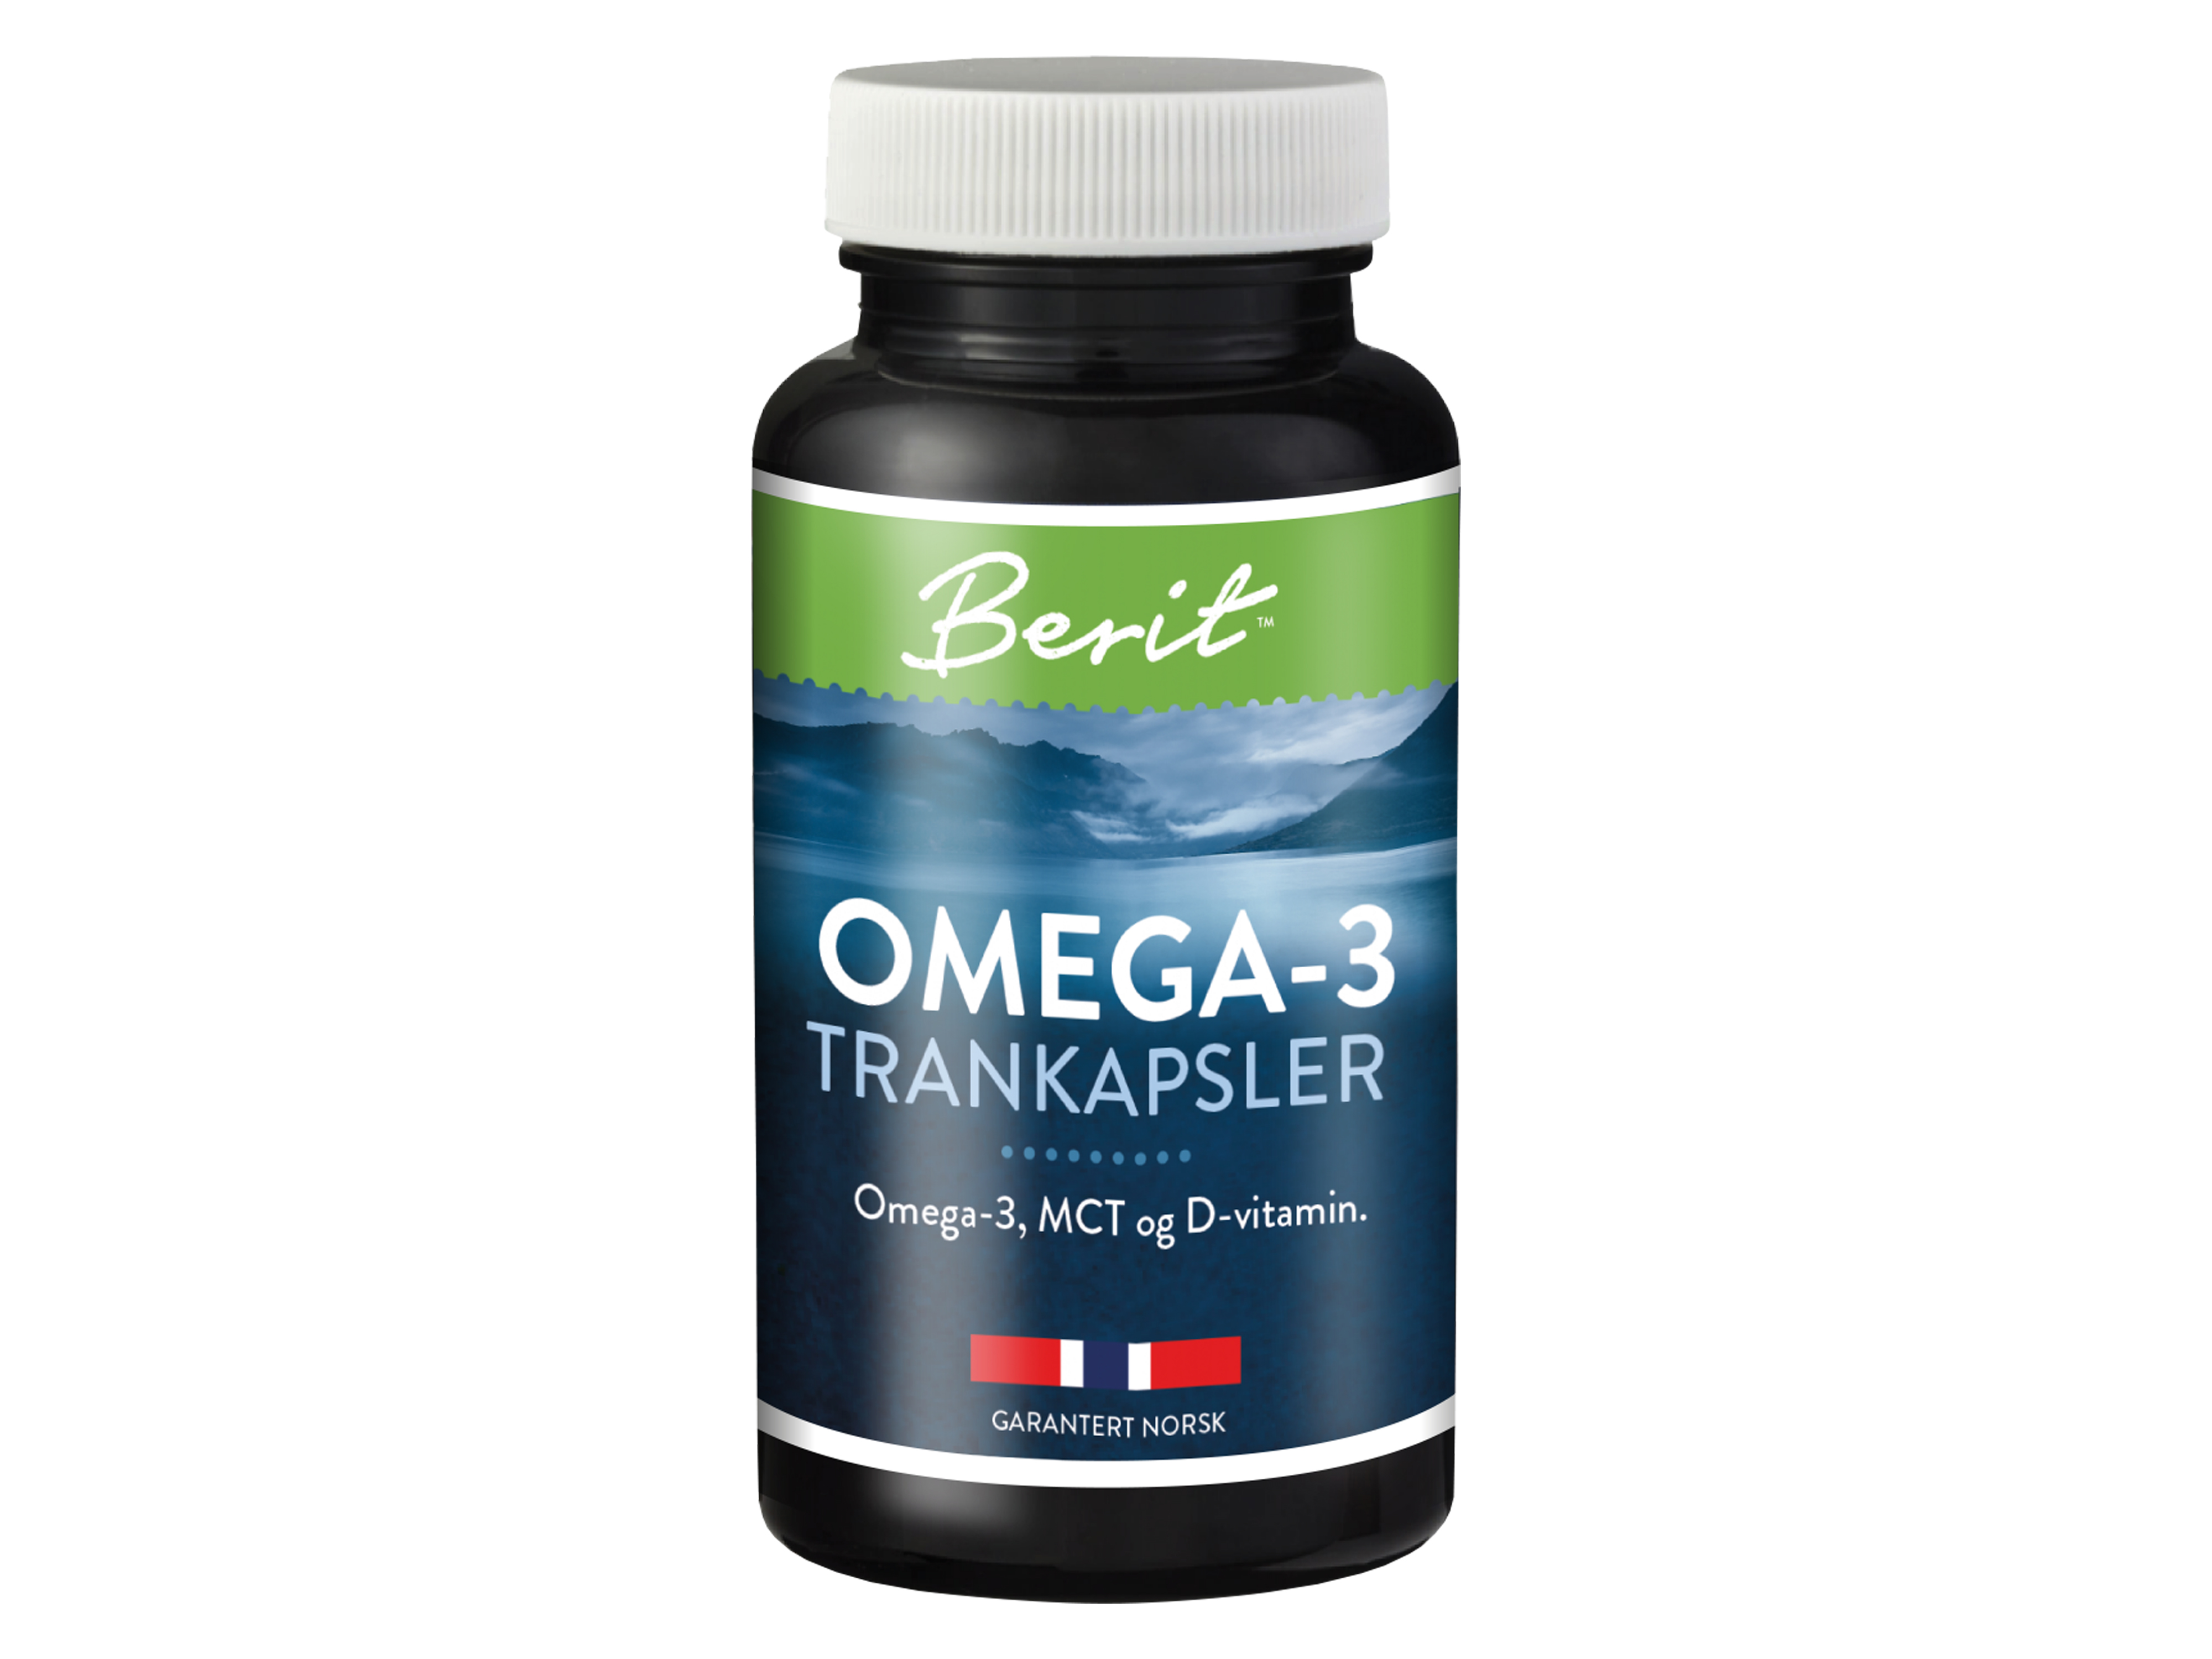 Omega-3 trankapsler med MCT og D-vitamin, 60 kapsler